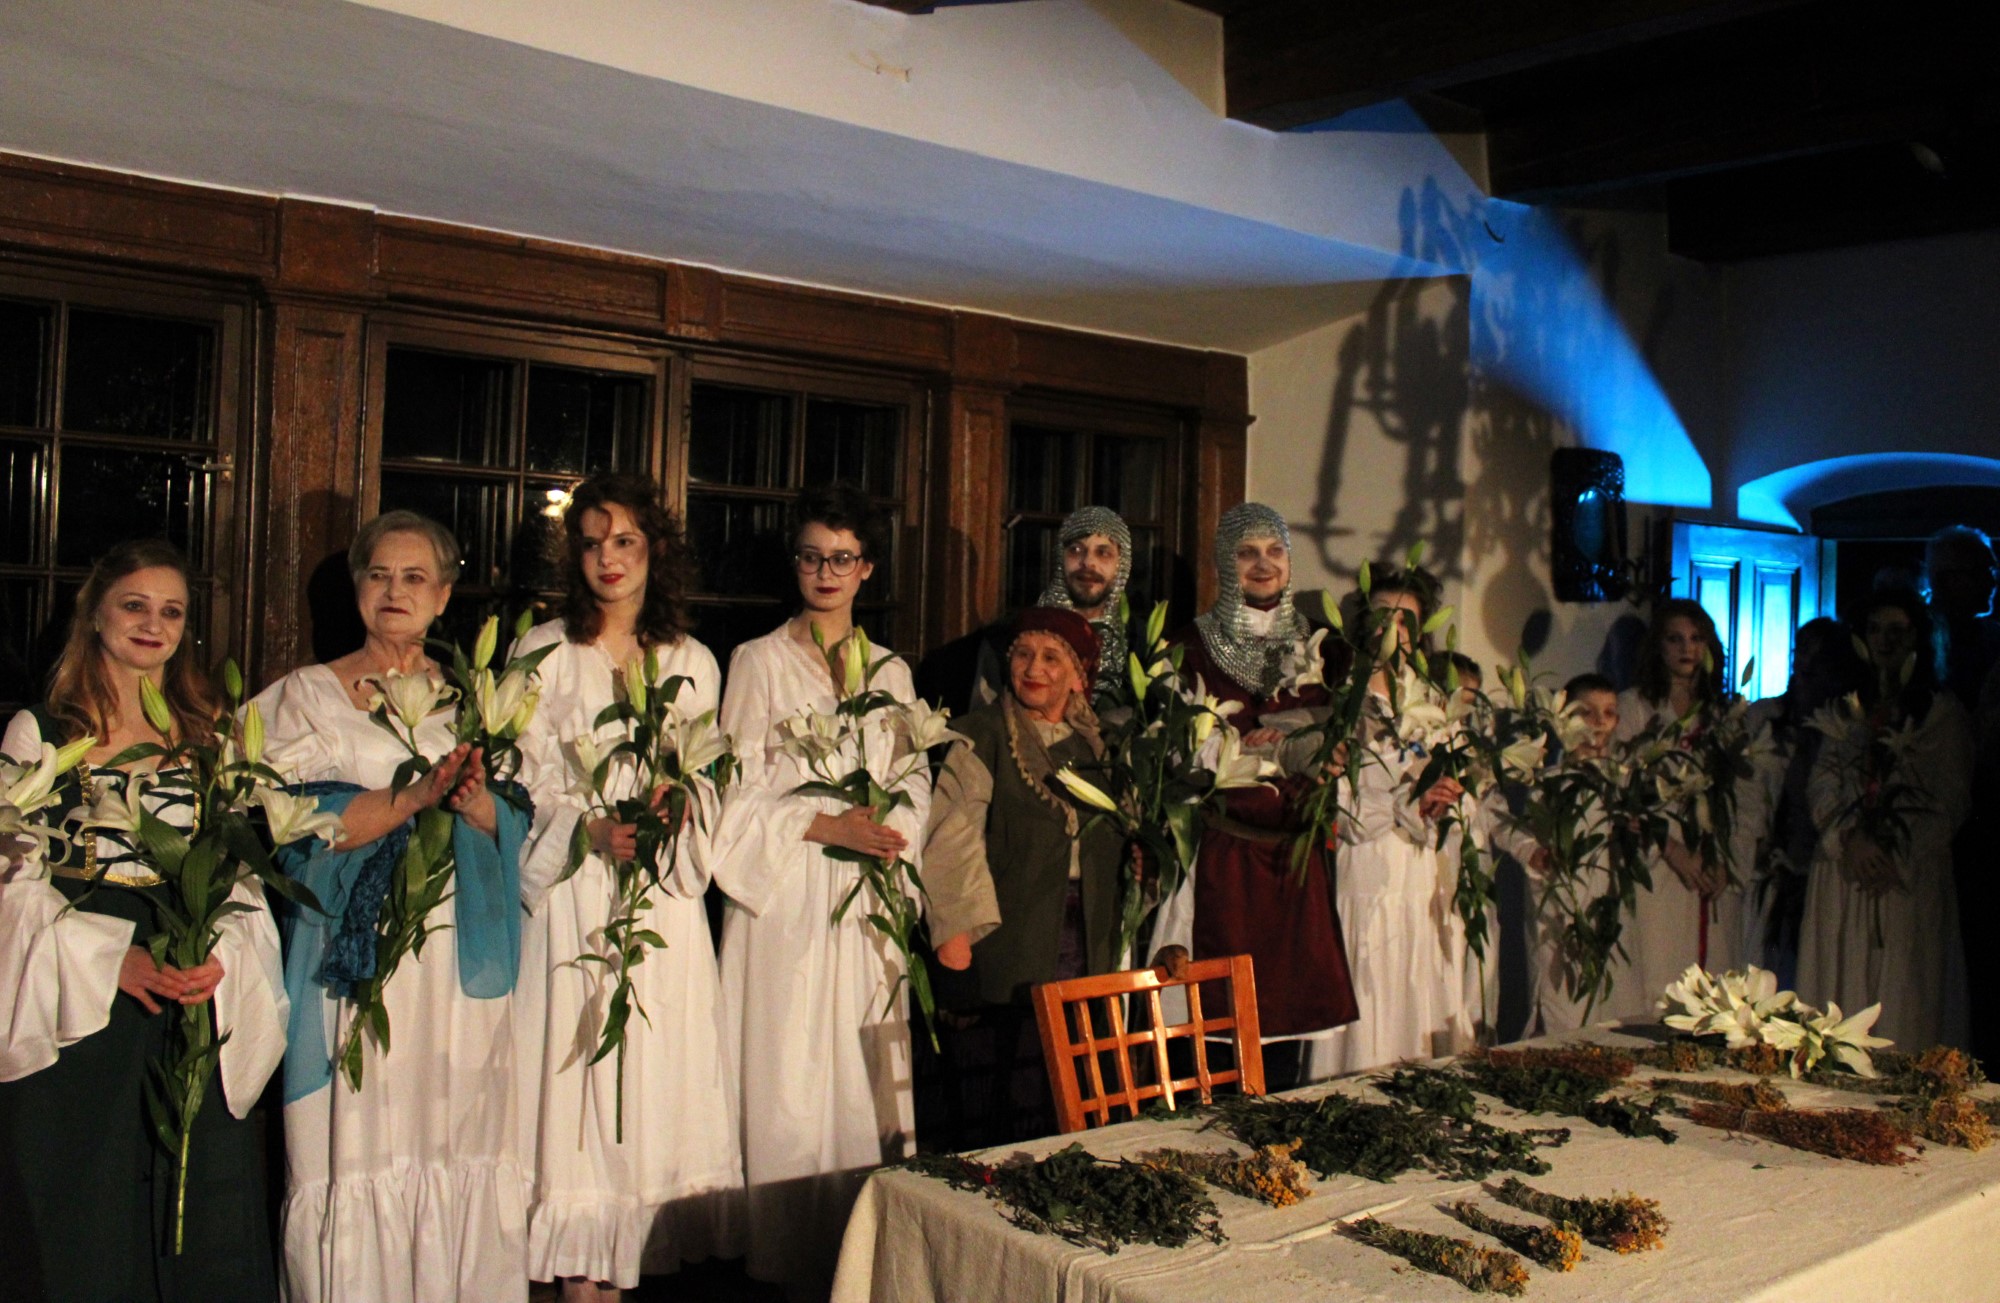 Na zdjęciu znajdują się aktorzy po zakończonym spektaklu „Lilije”, trzymają w ręku kwiaty białych lilii, które otrzymali za niesamowitą grę aktorską.